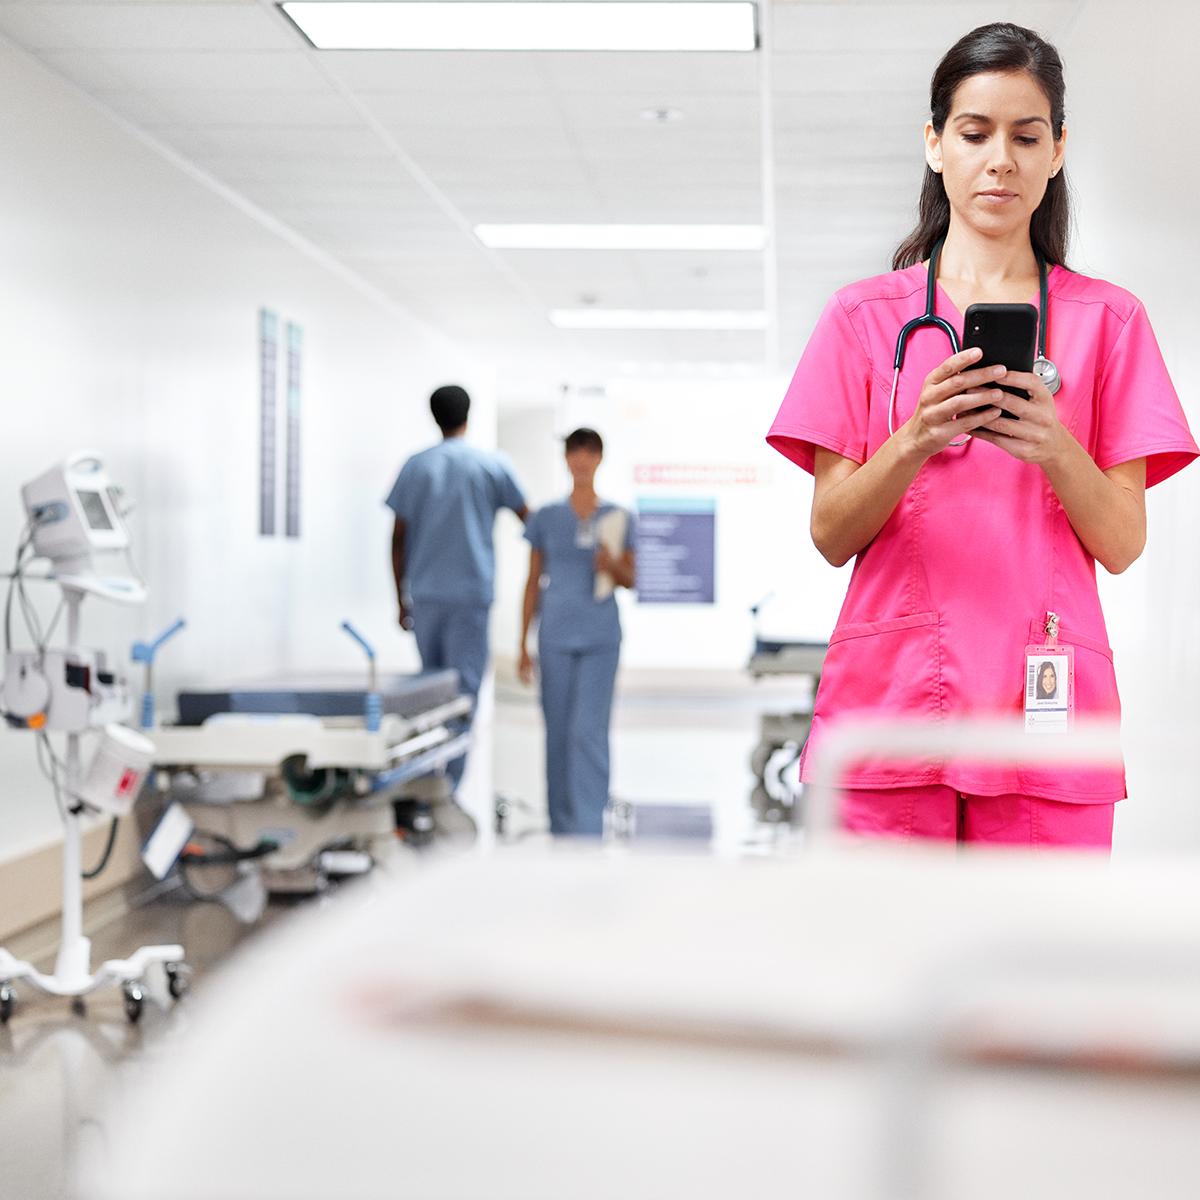 Een arts kijkt op haar telefoon in de gang van een ziekenhuis. Ze draagt roze OK-kleding.